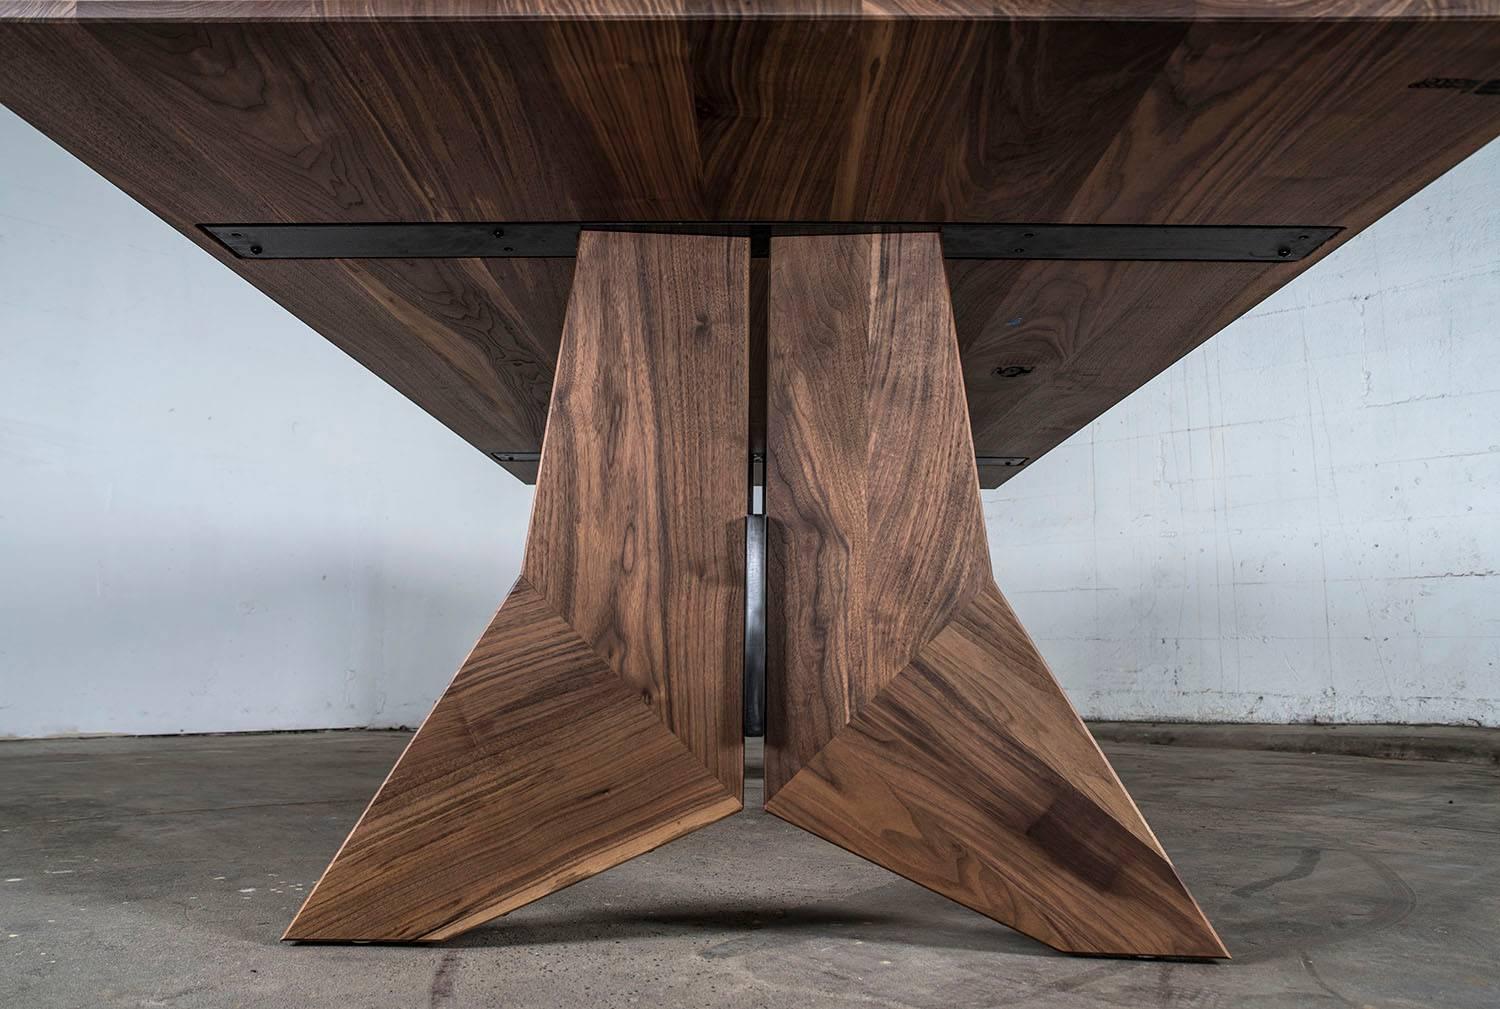 Der moderne Esstisch aus Hartholz und Stahl, der Peralta Esstisch, ist das erste neue Design des Jahres 2017. Mit seinen scharfen Winkeln und der subtilen Verbindung von warmgewalztem Stahlblech und heimischen Harthölzern ist er ein Schritt in eine